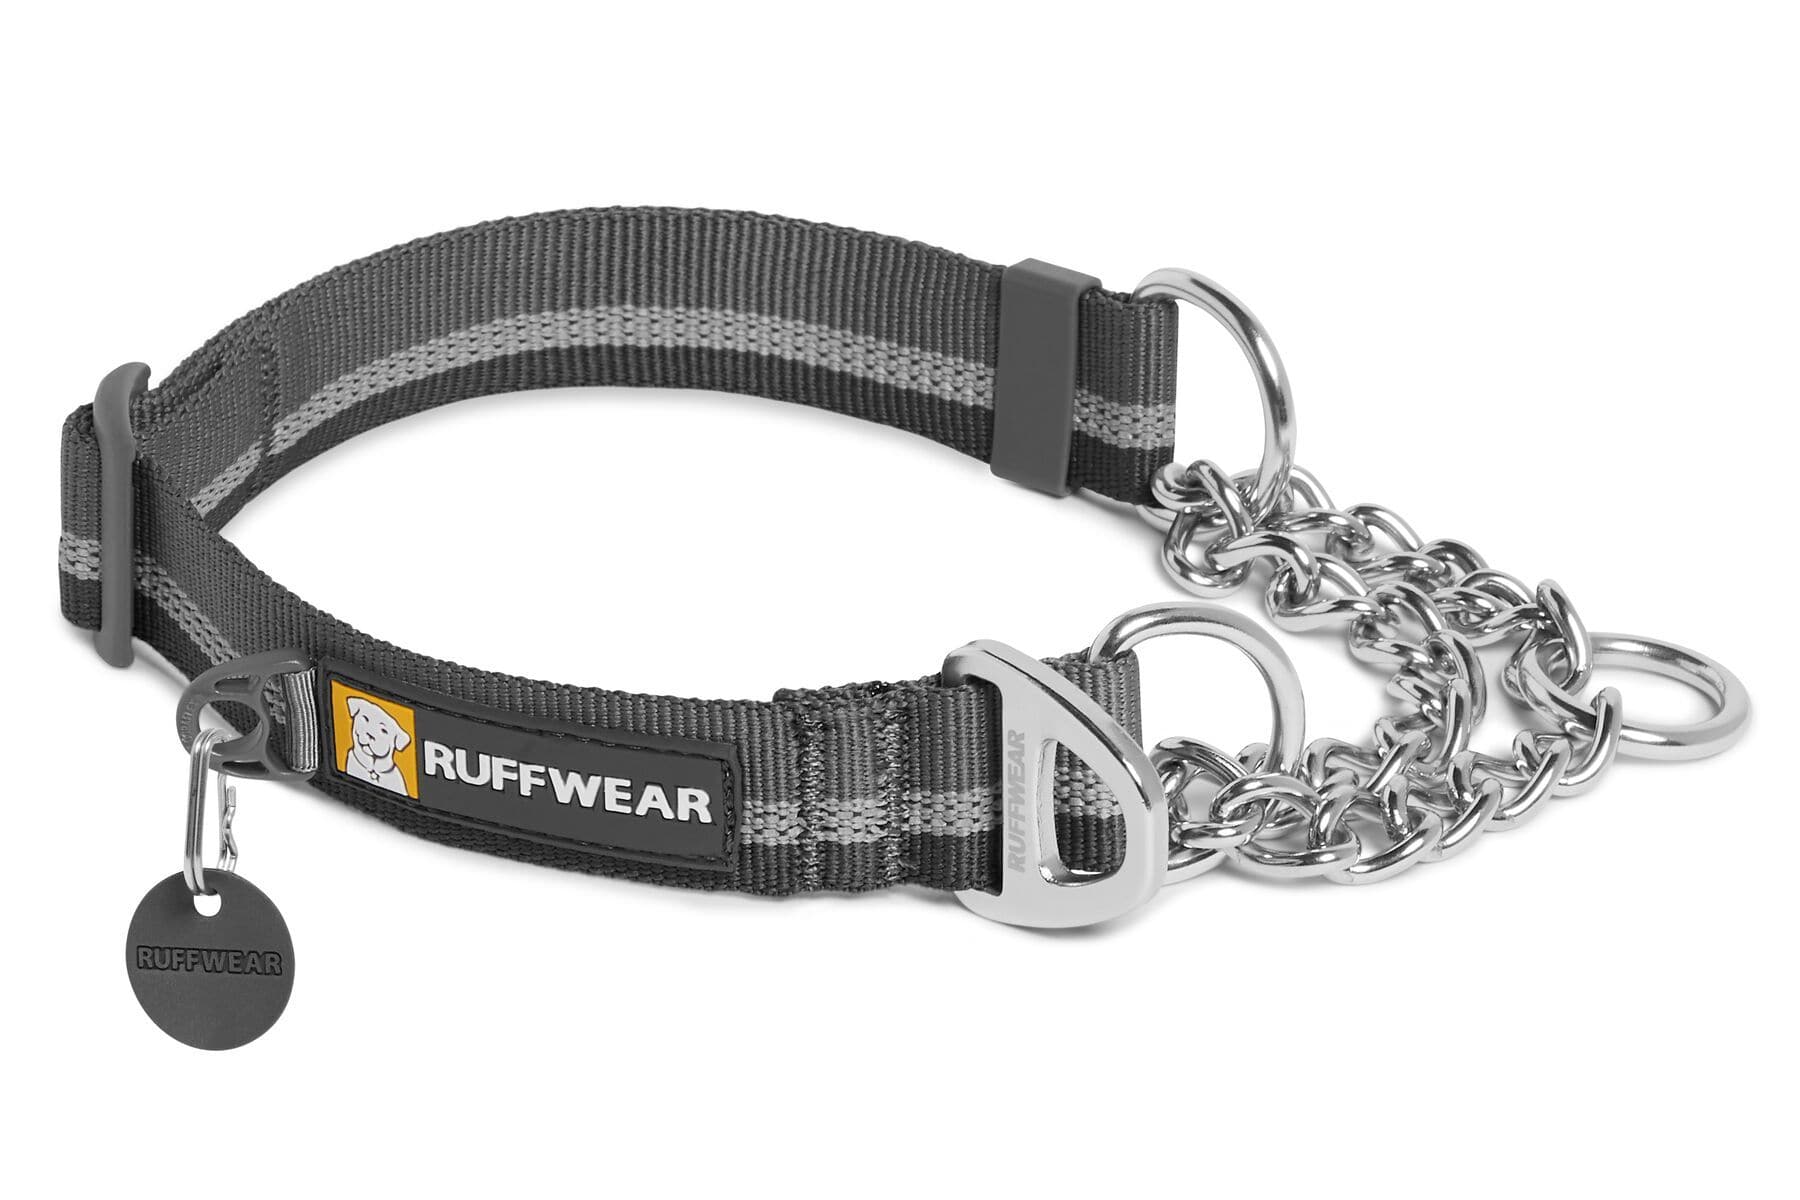 Collar para Perros Modelo Chain Reaction en Gris (Granite Gray) - Ruffwear